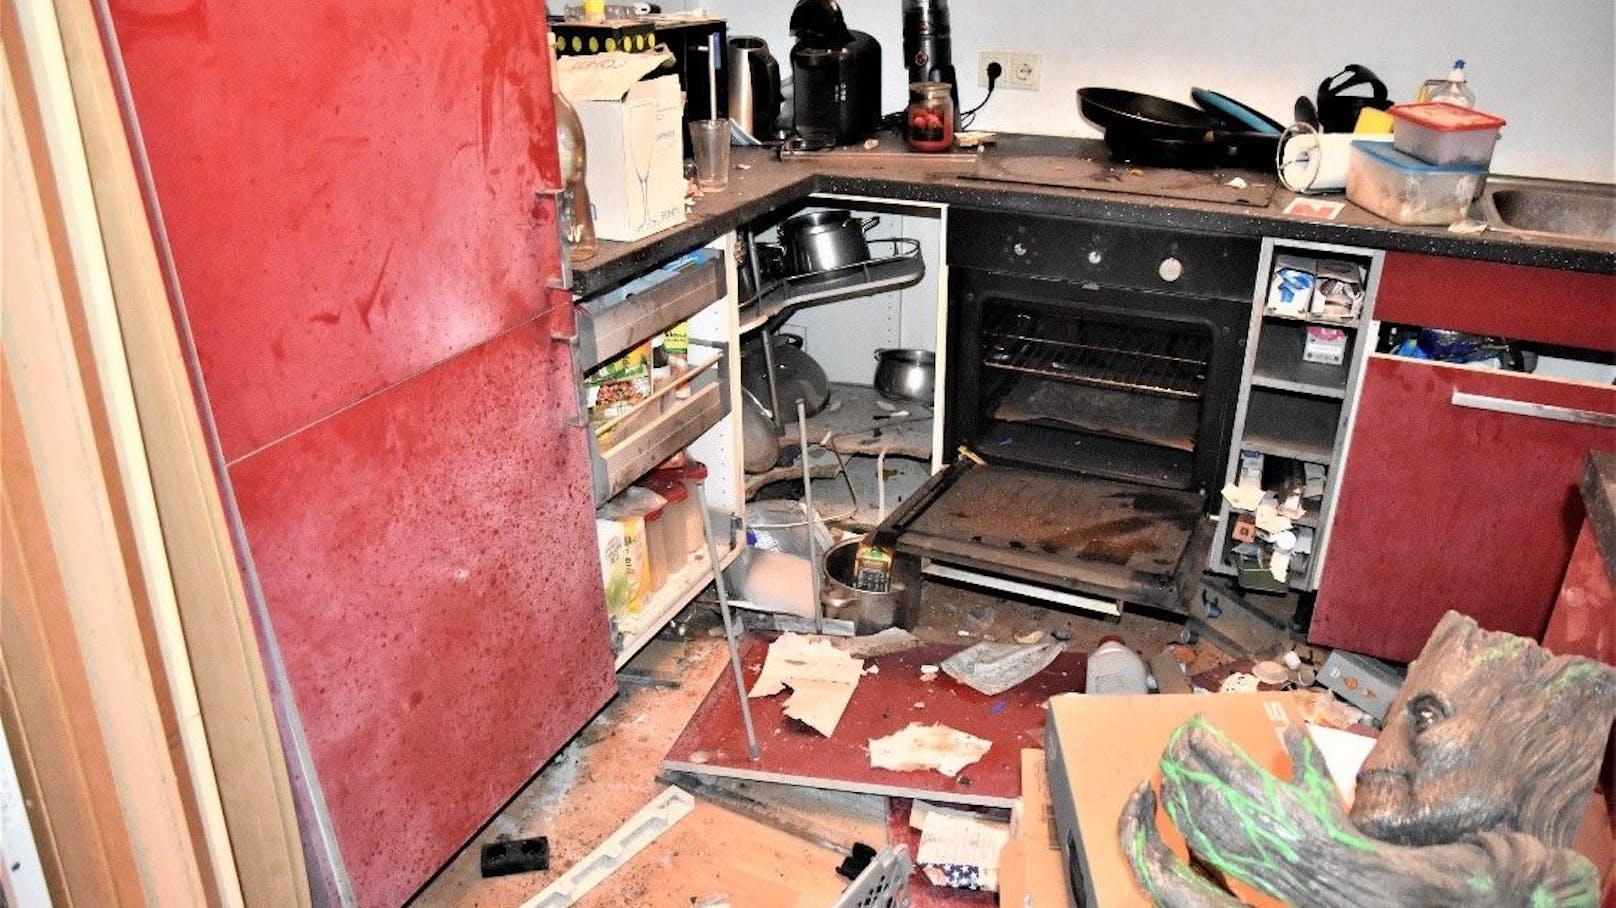 Wiener Wohnung nach Explosion völlig verwüstet